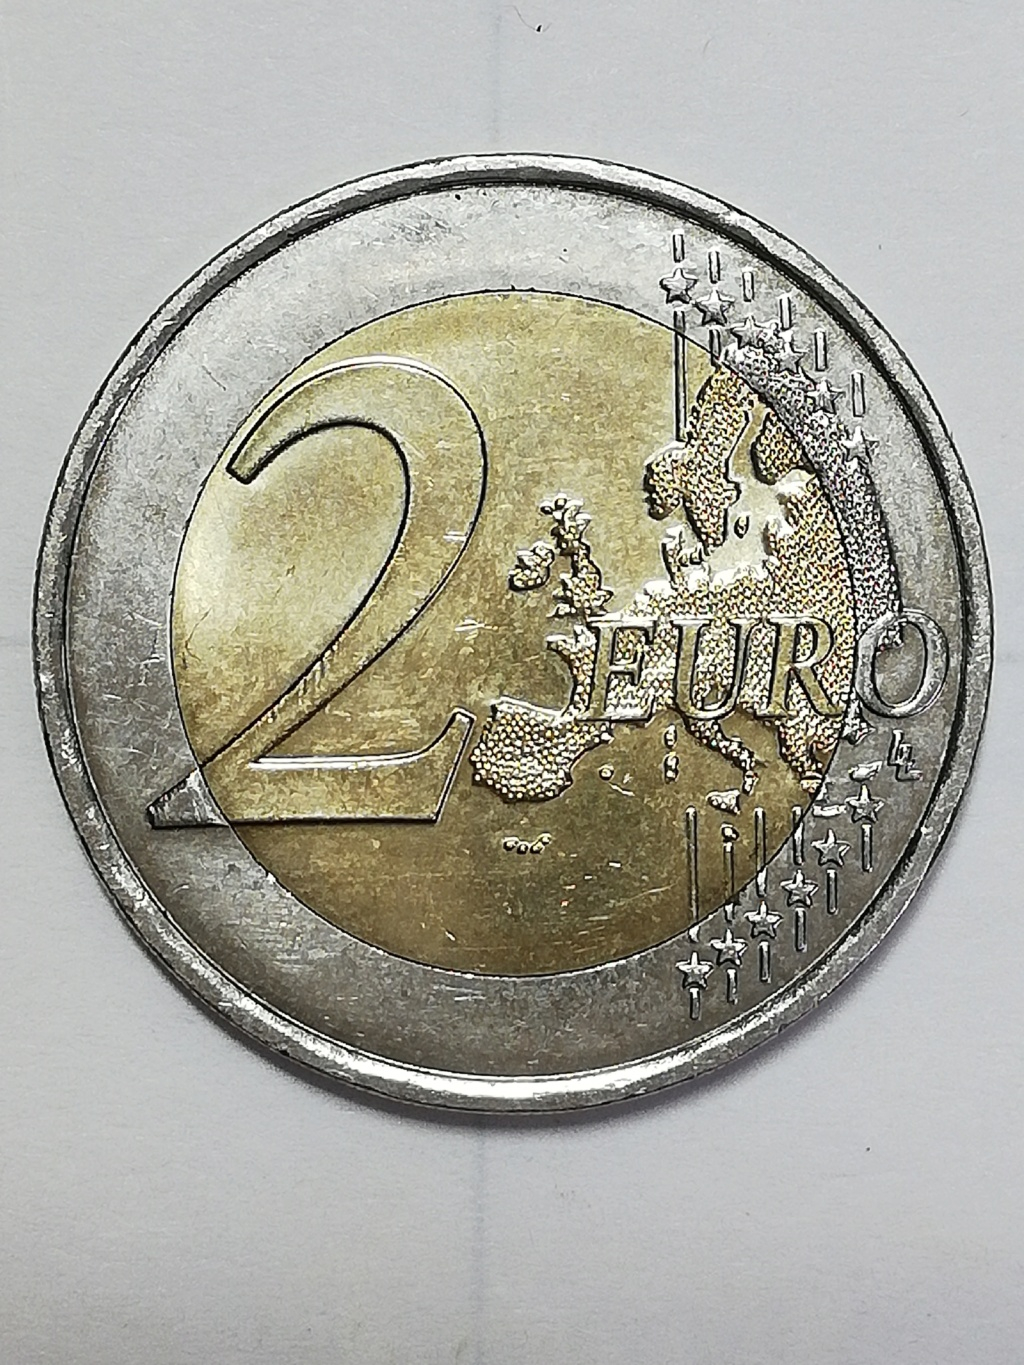 2 euros Francia 2022 Img_2670